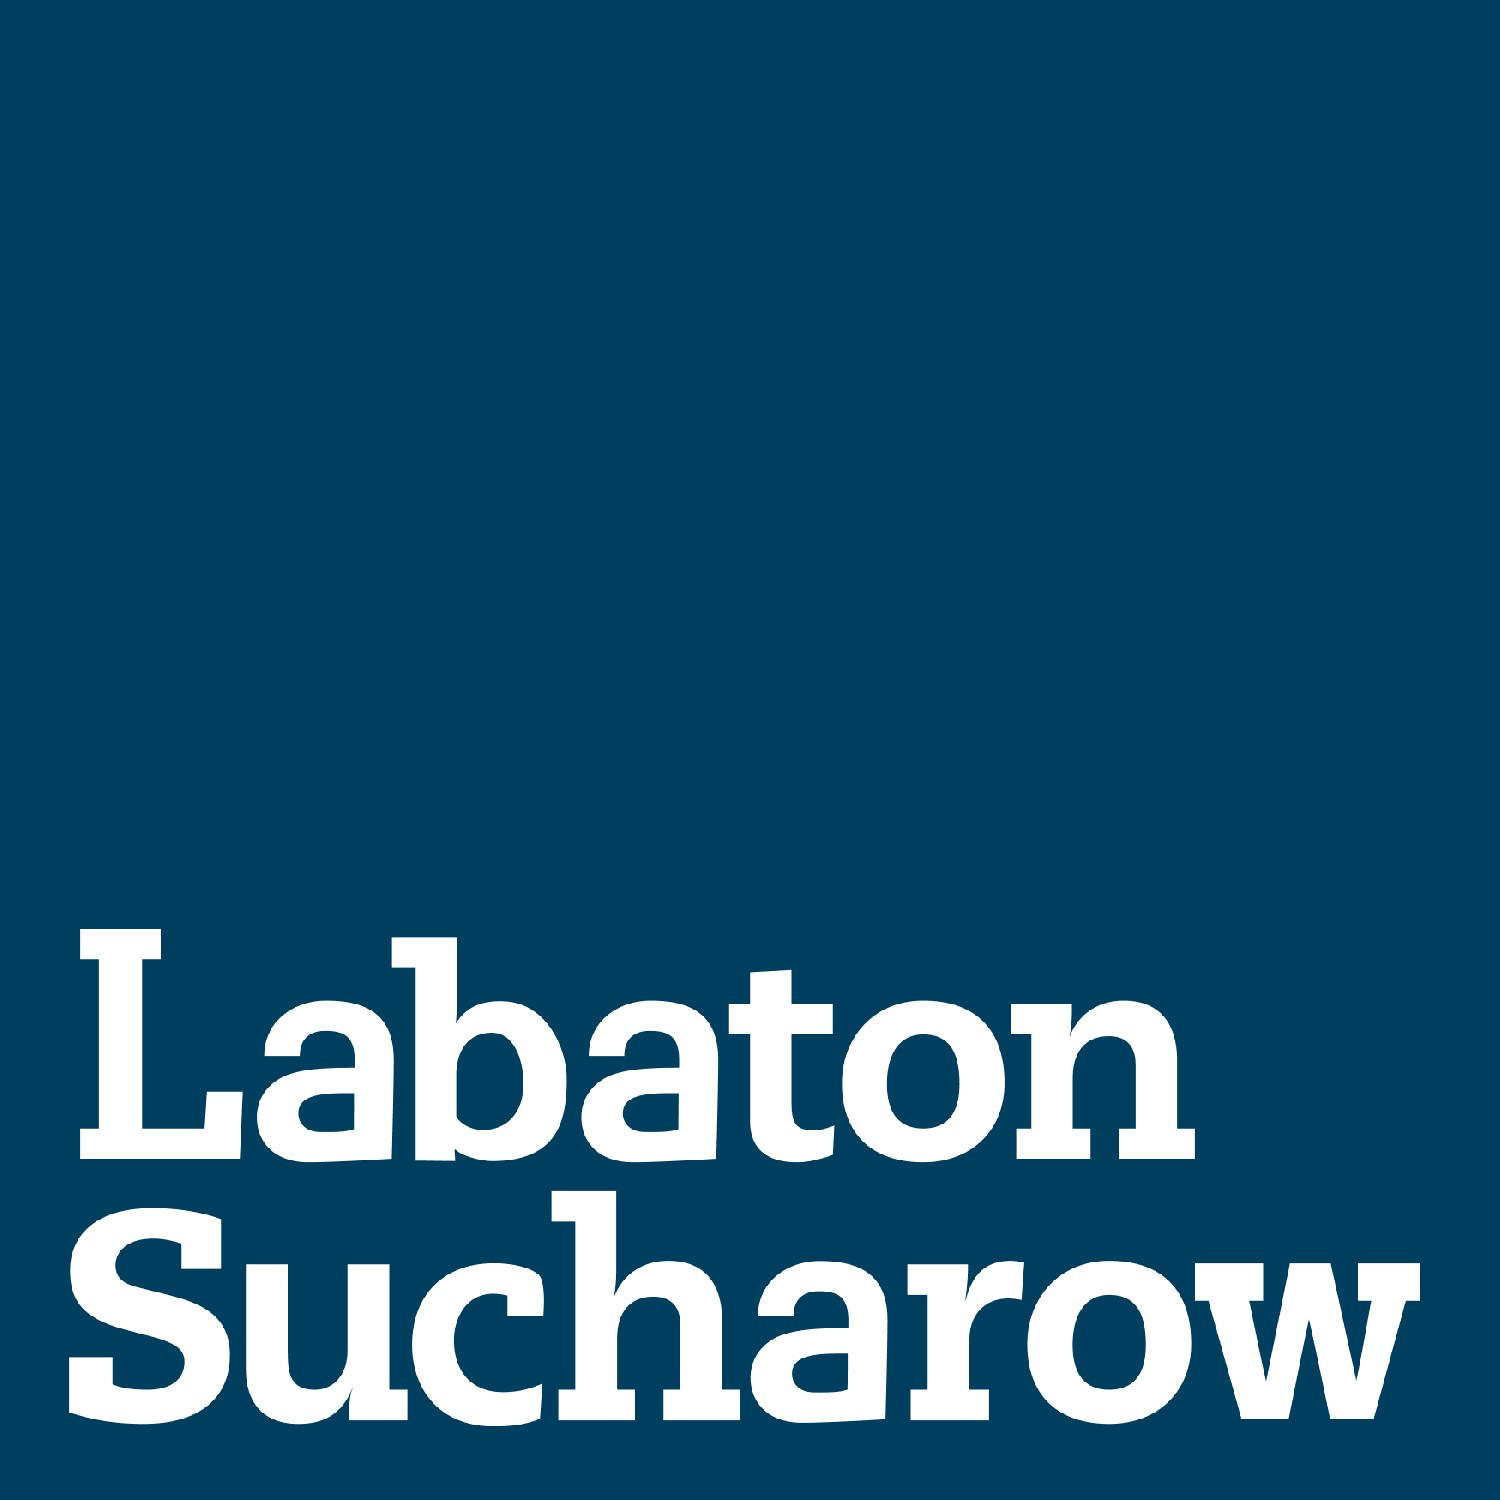 Labaton Sucharow LLP, Thursday, April 8, 2021, Press release picture